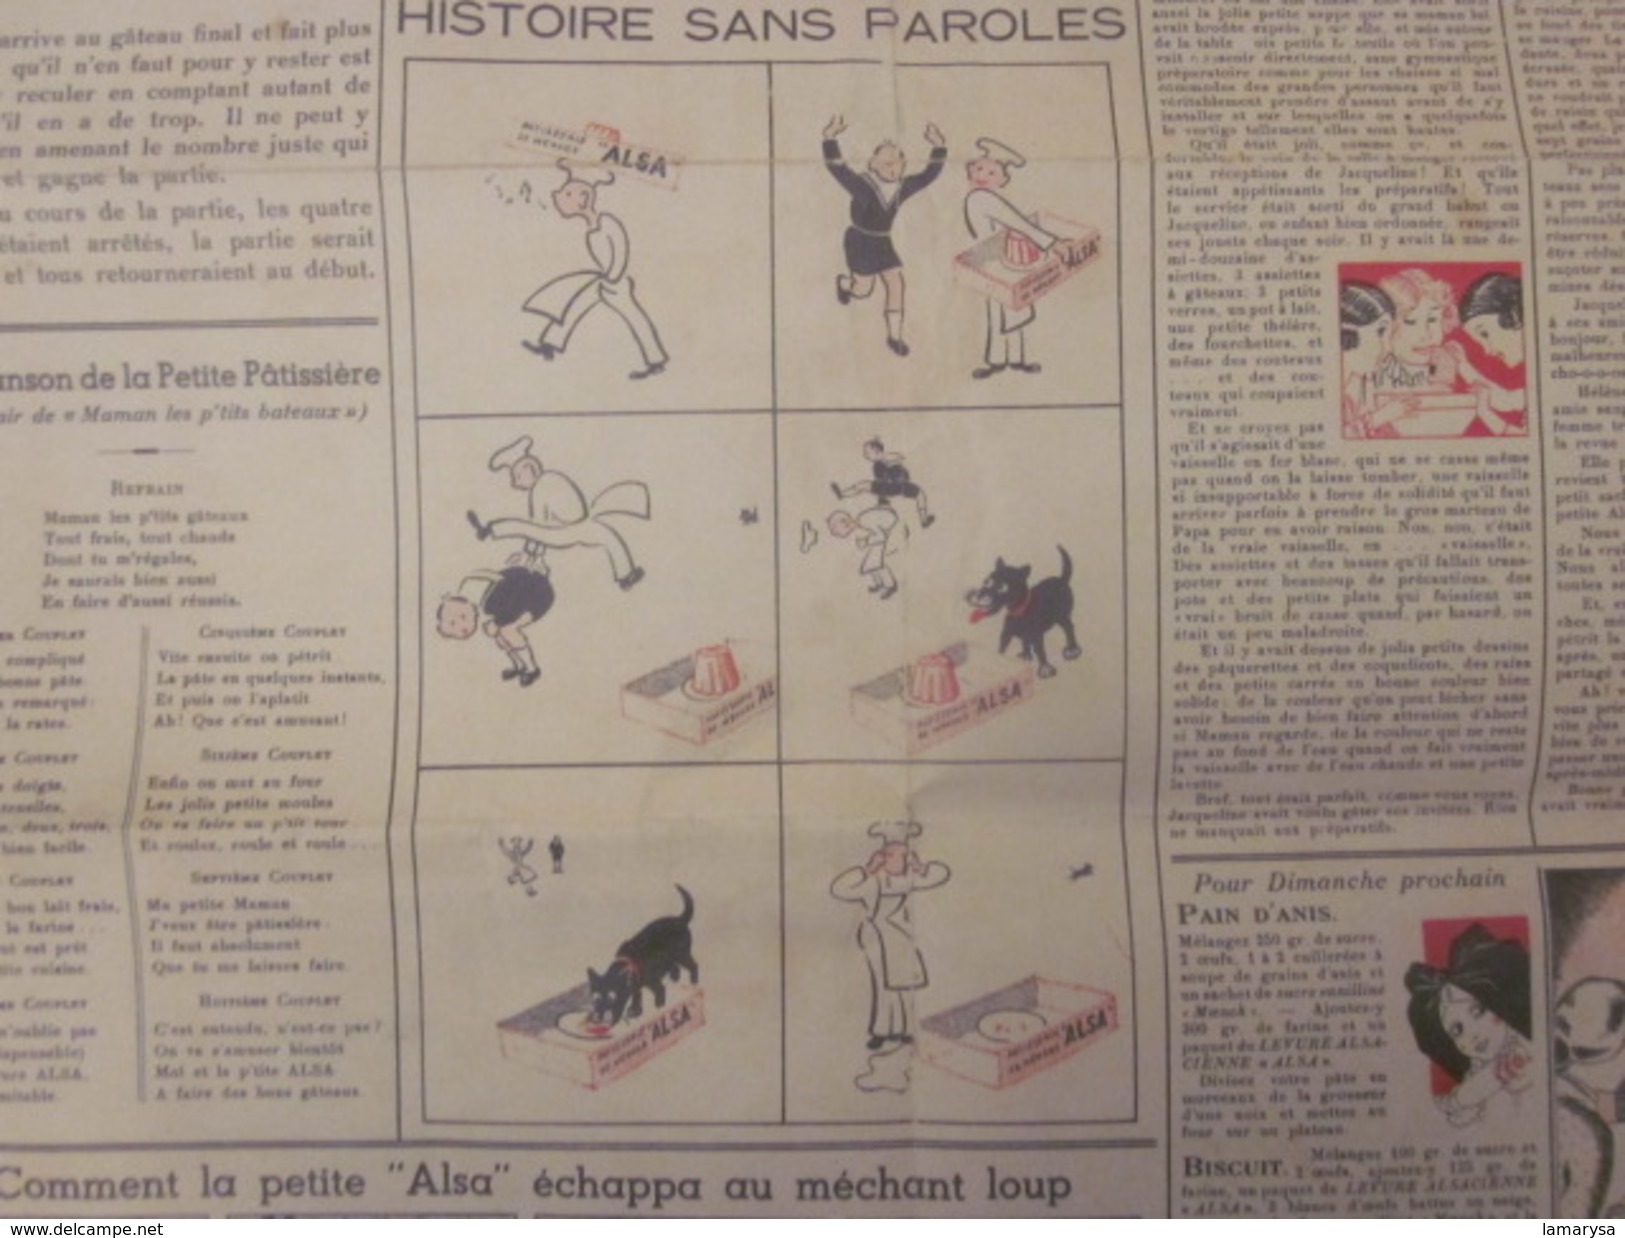 Vintage"Jeu de L'ALSA" années 50+Règle du jeu-Dépliant publicitaire Levure Alsacienne Nancy+enveloppe originale protecti